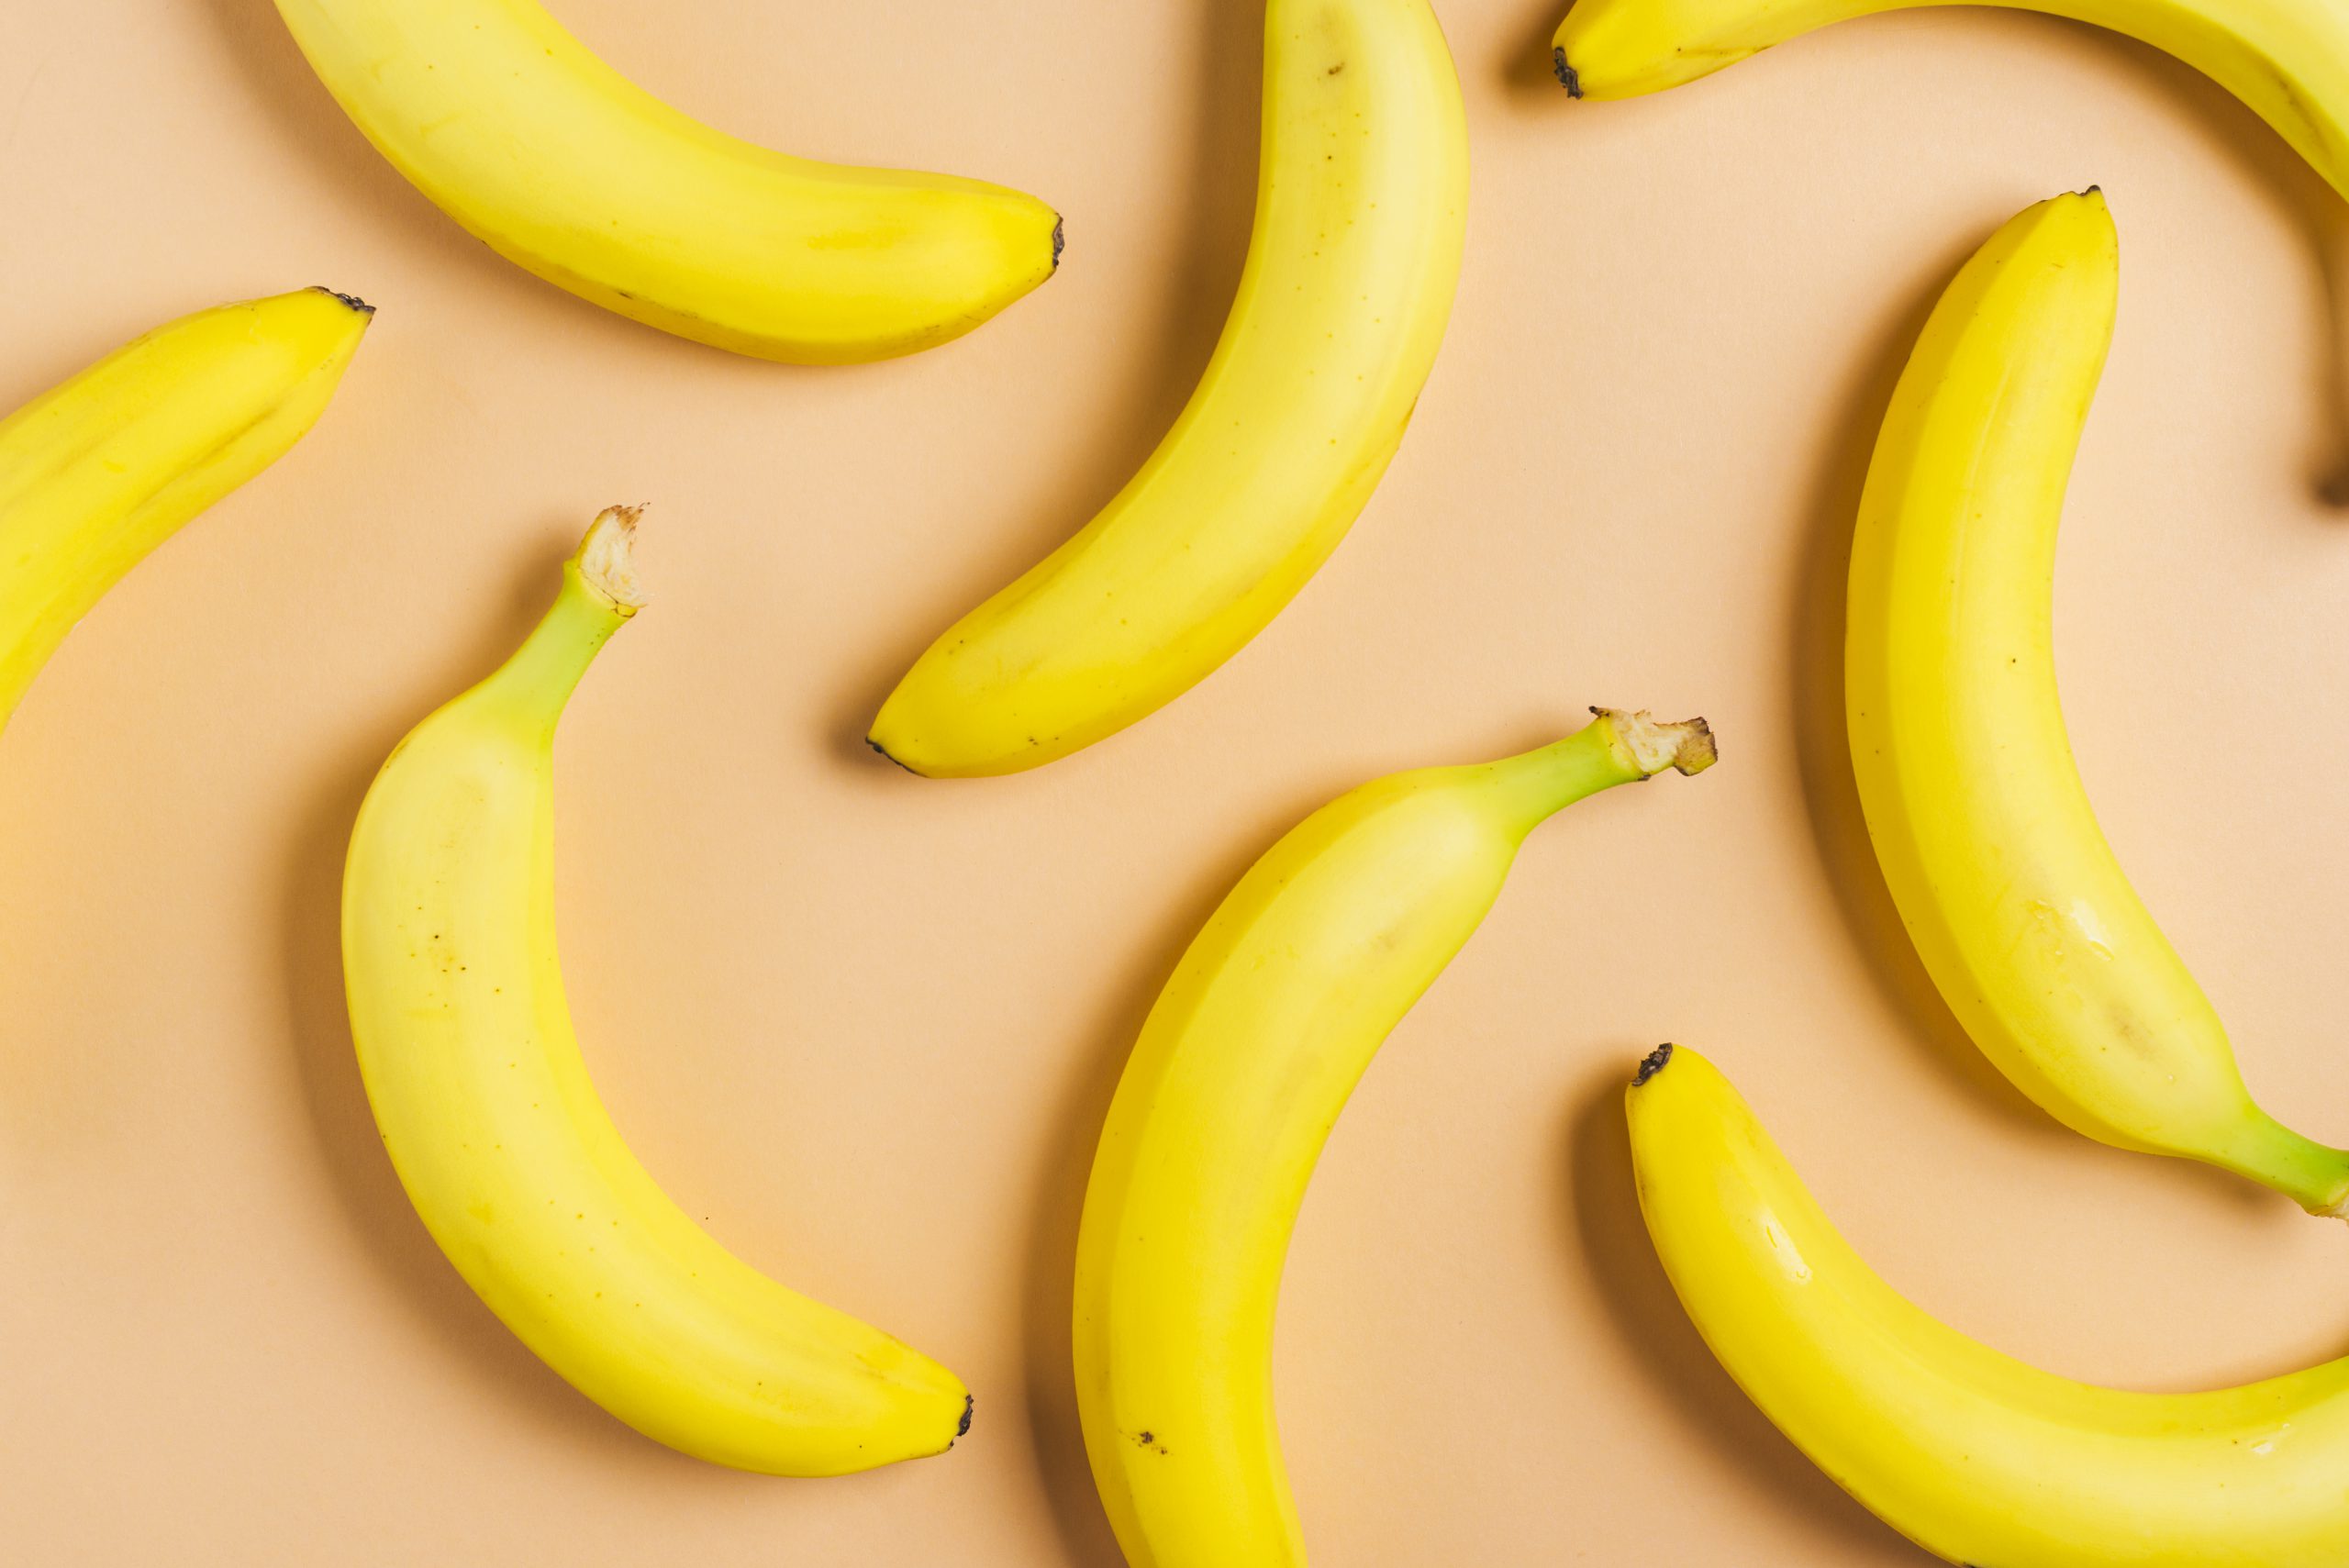 Além do potássio: conheça outros benefícios da banana para a saúde